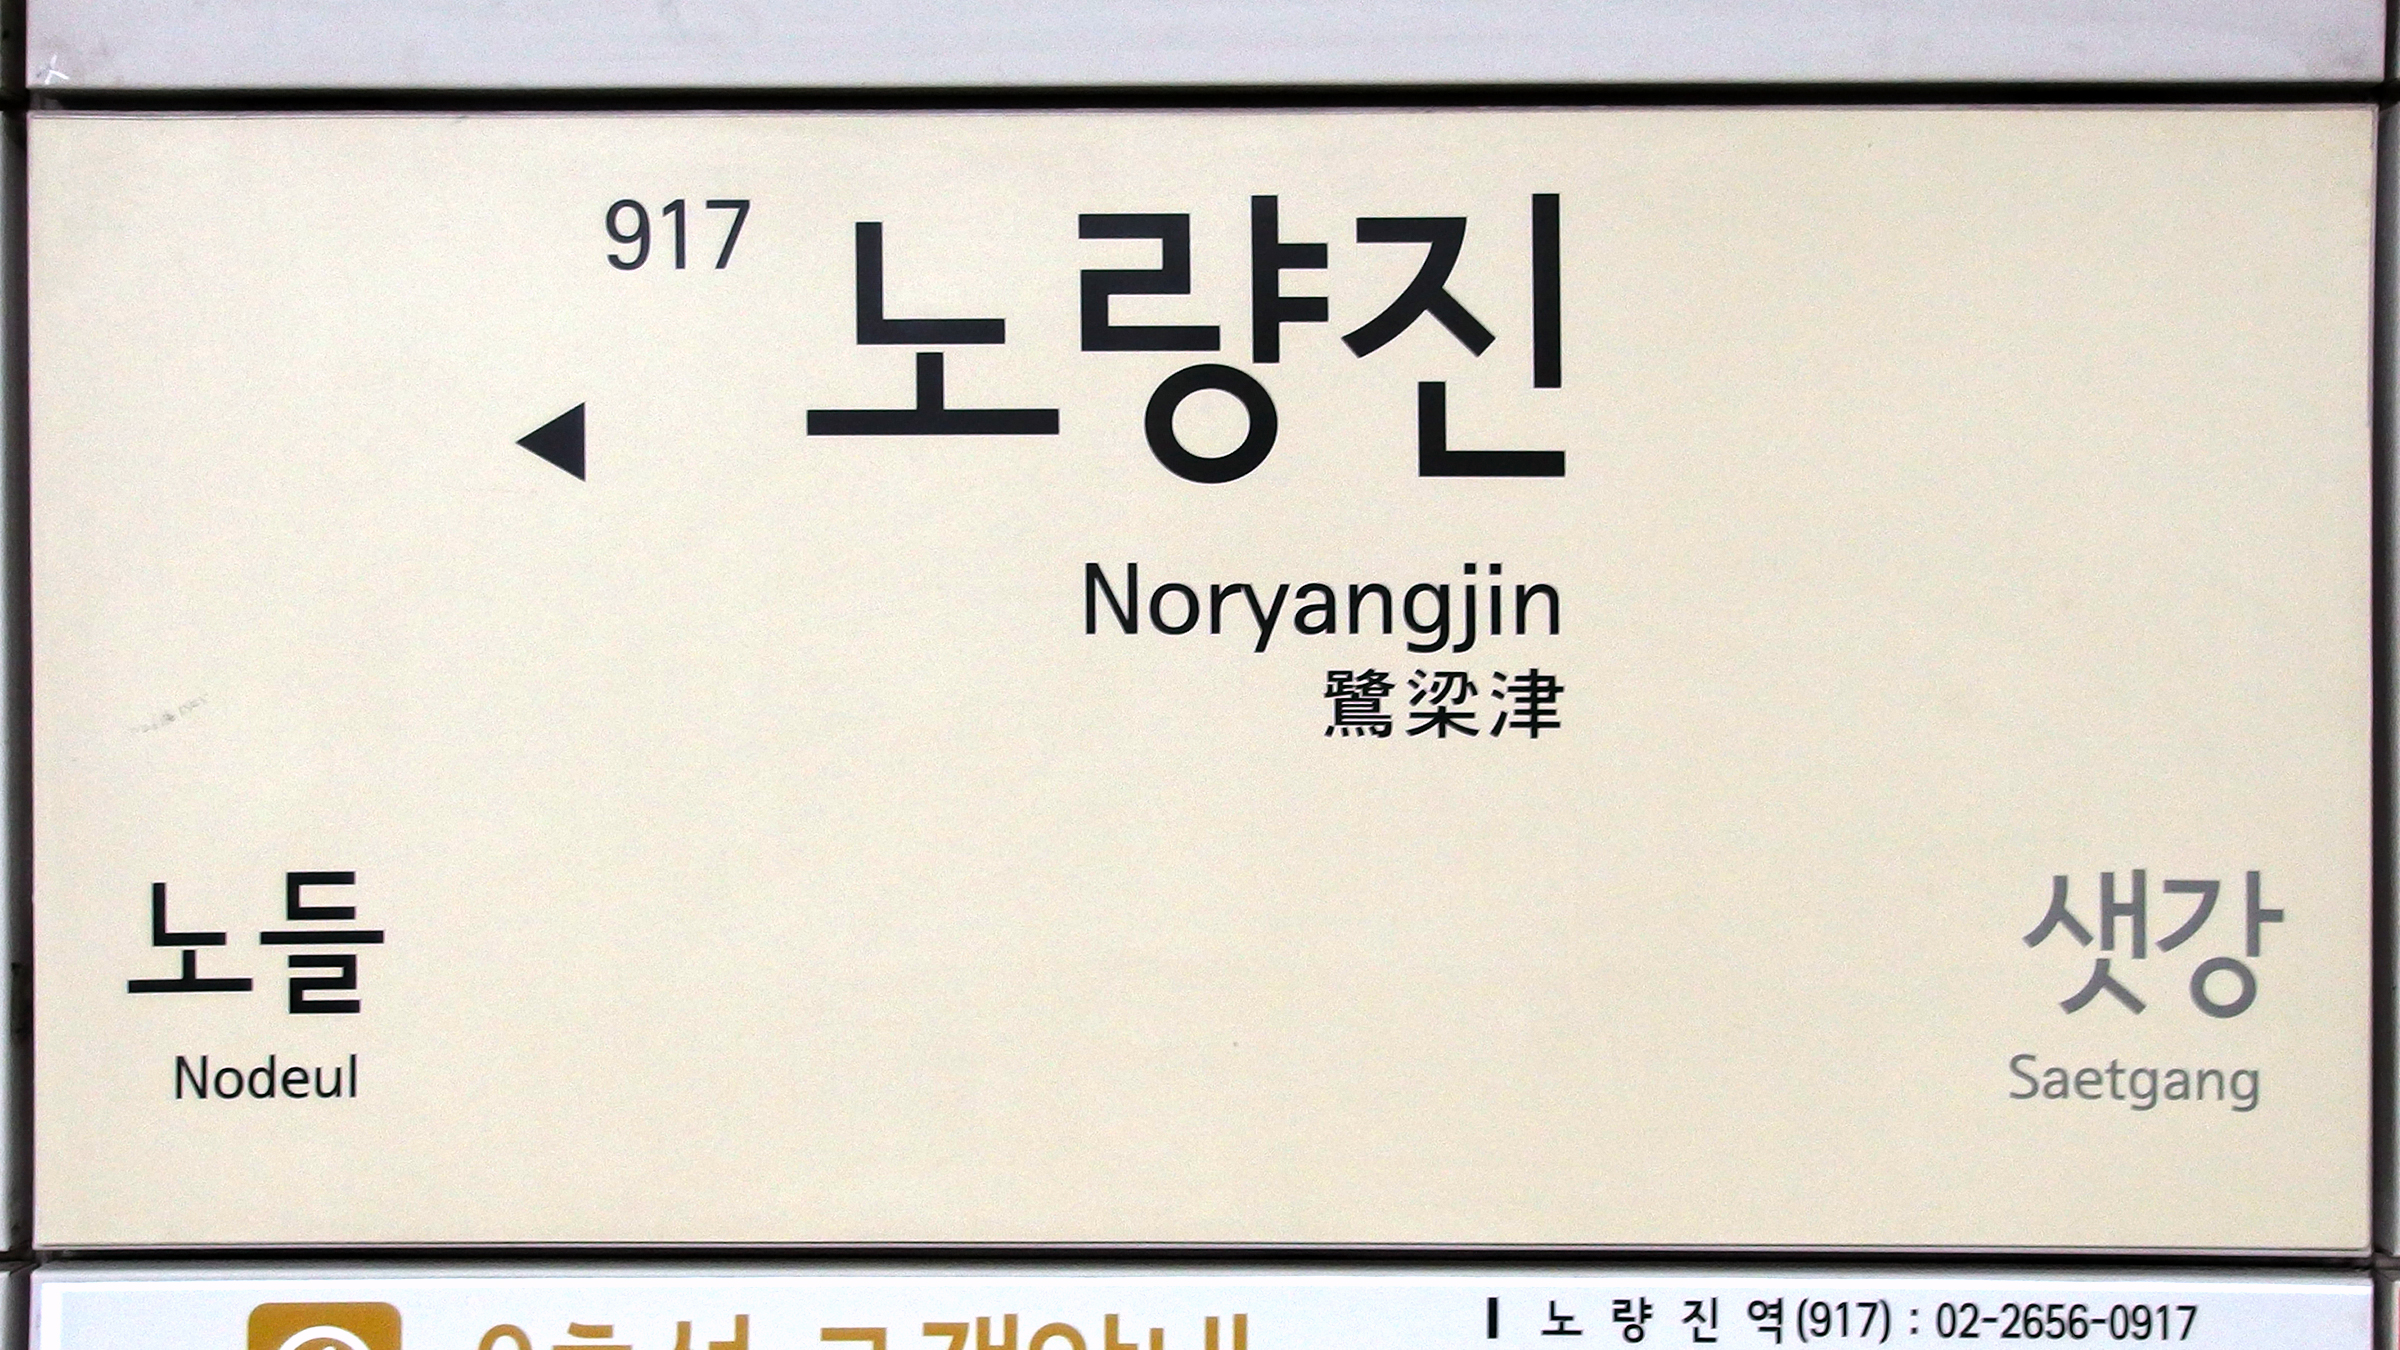 917 Noryangjin.jpg